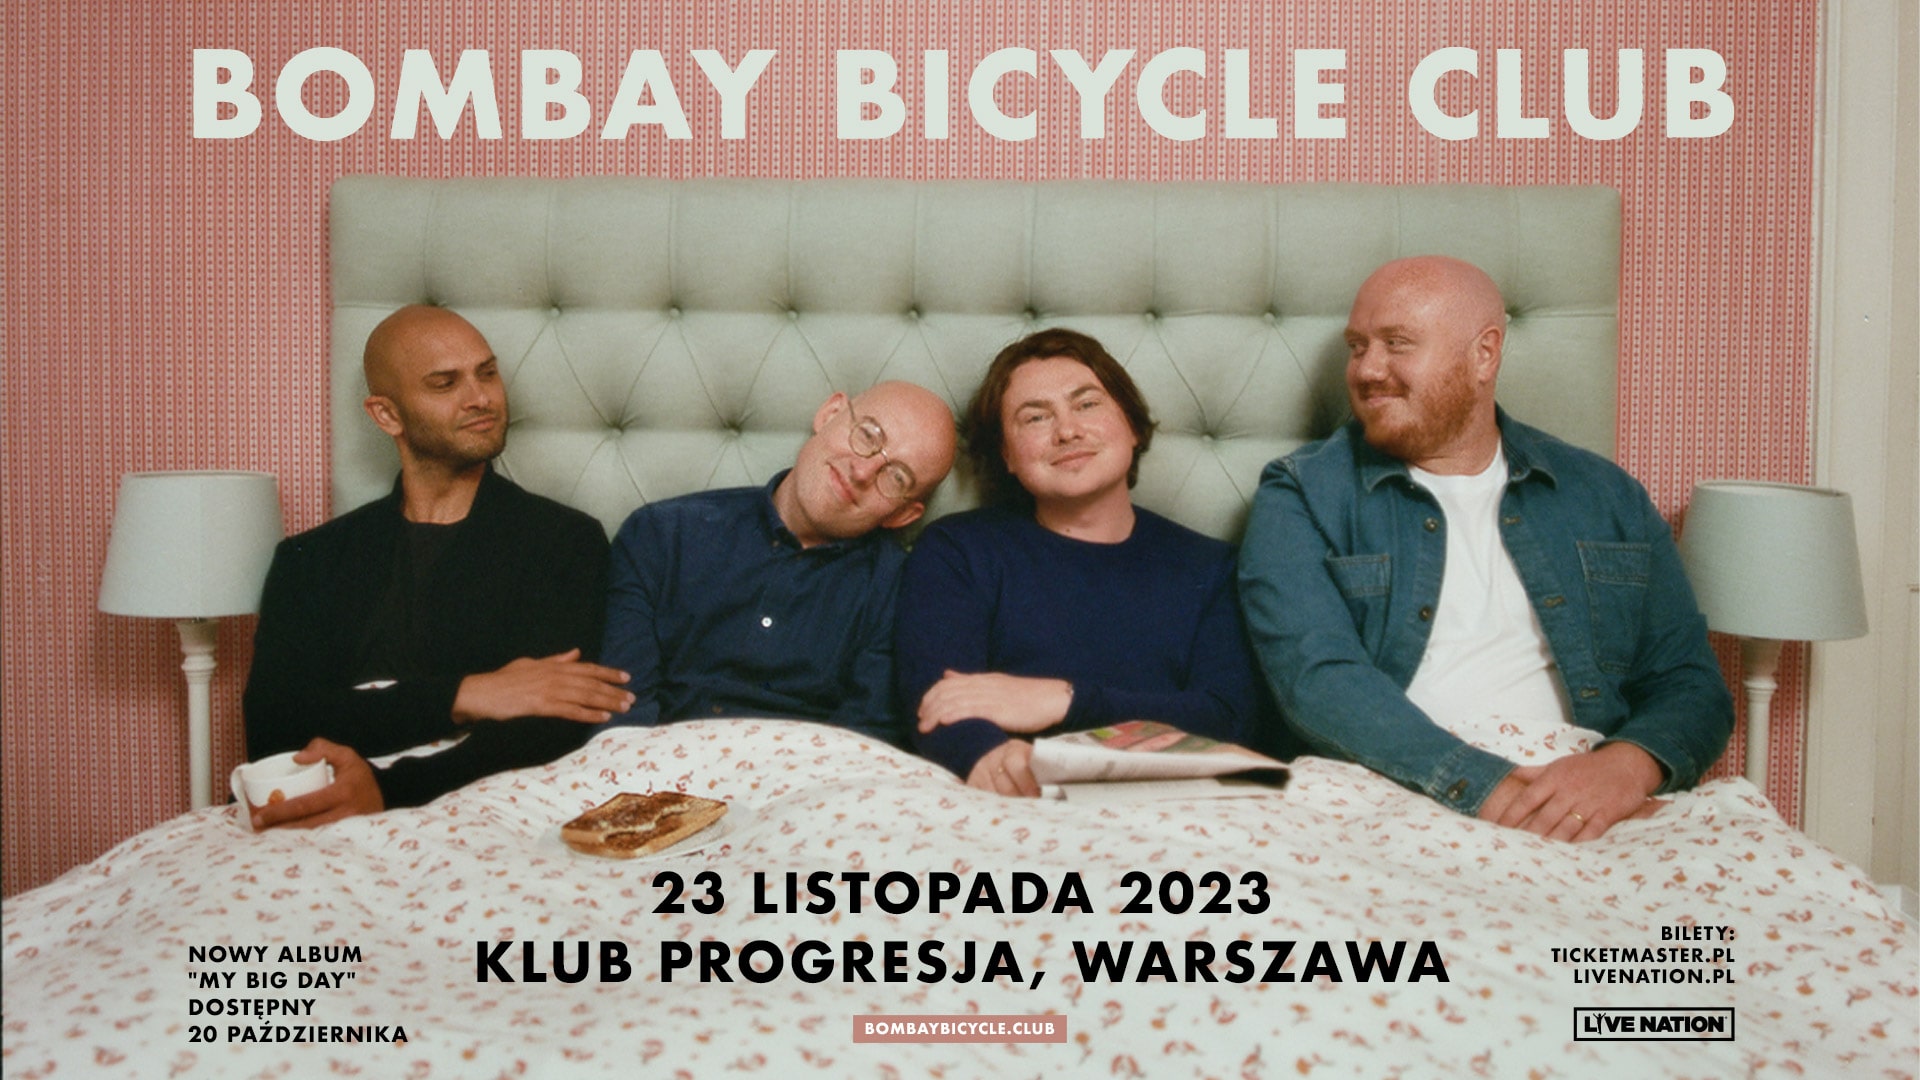 Bombay Bicycle Club – Klub Progresja, Warszawa, 23.11.2023